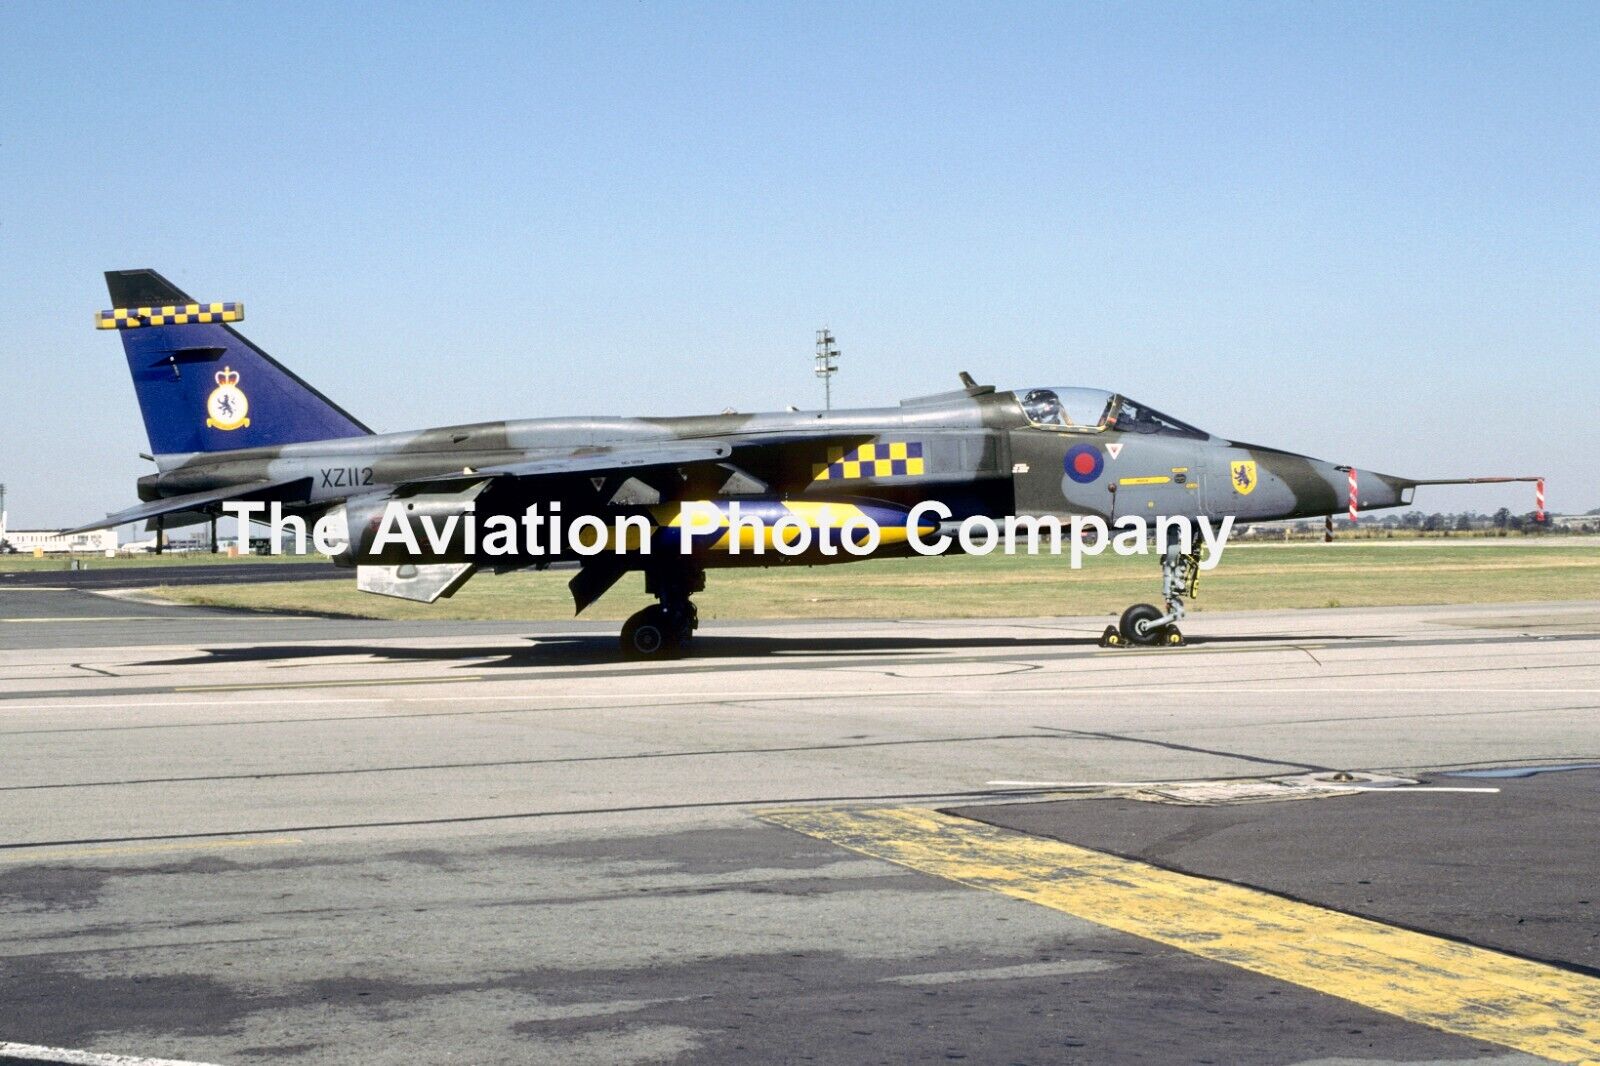 RAF 54 Squadron Sepecat Jaguar GR.1 XZ112 (1991) Photograph